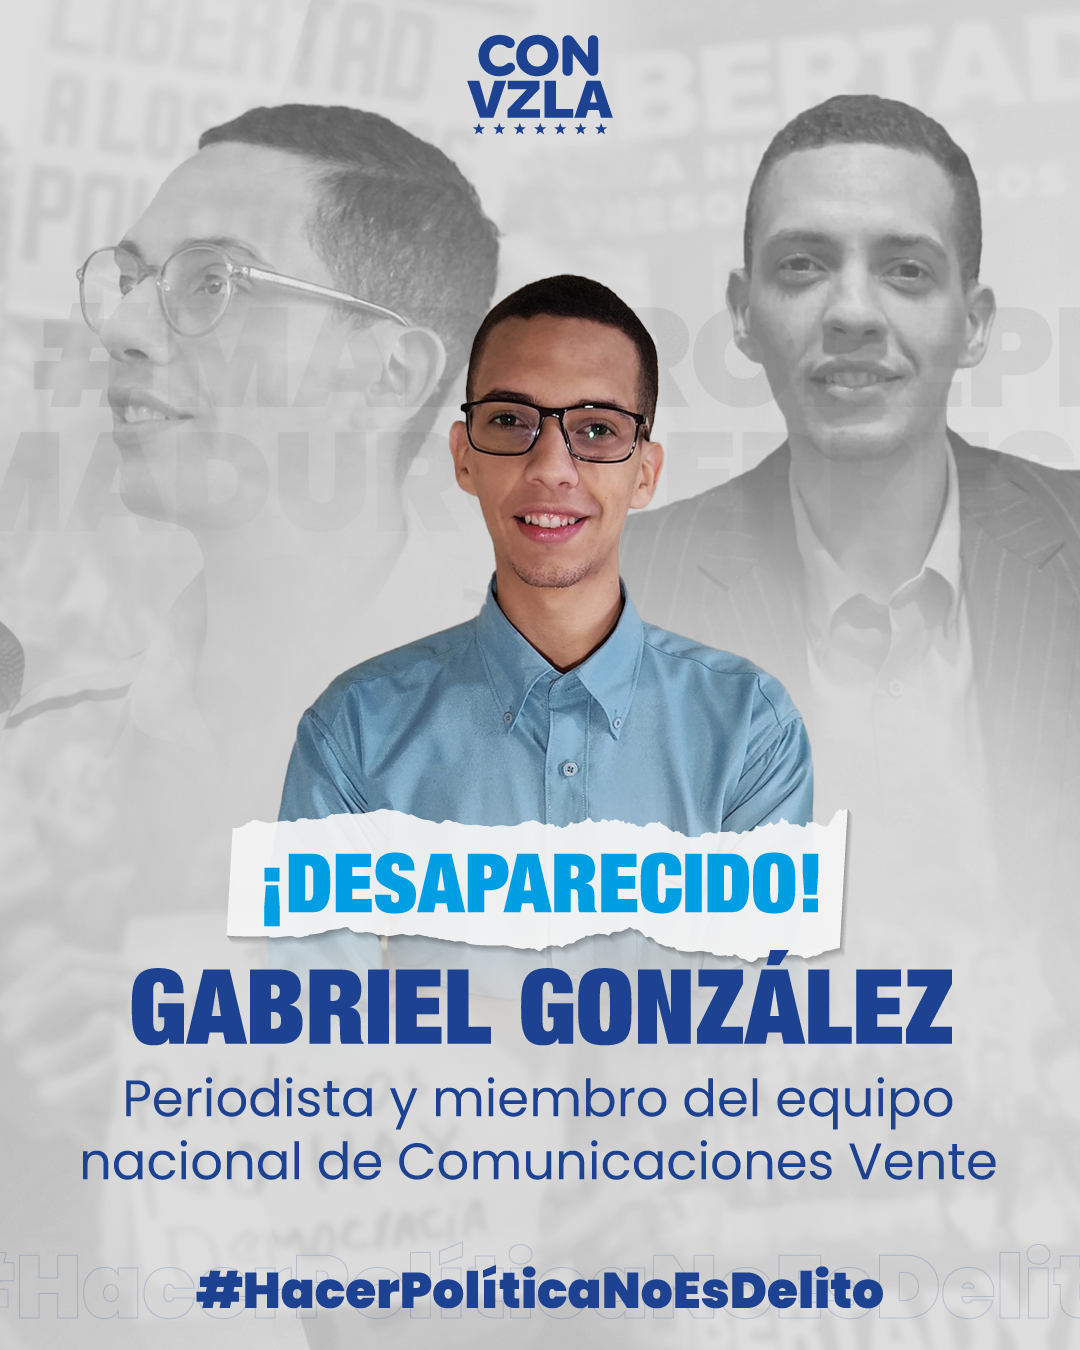 Vente Venezuela rechaza imputación ilegítima contra periodista Gabriel González